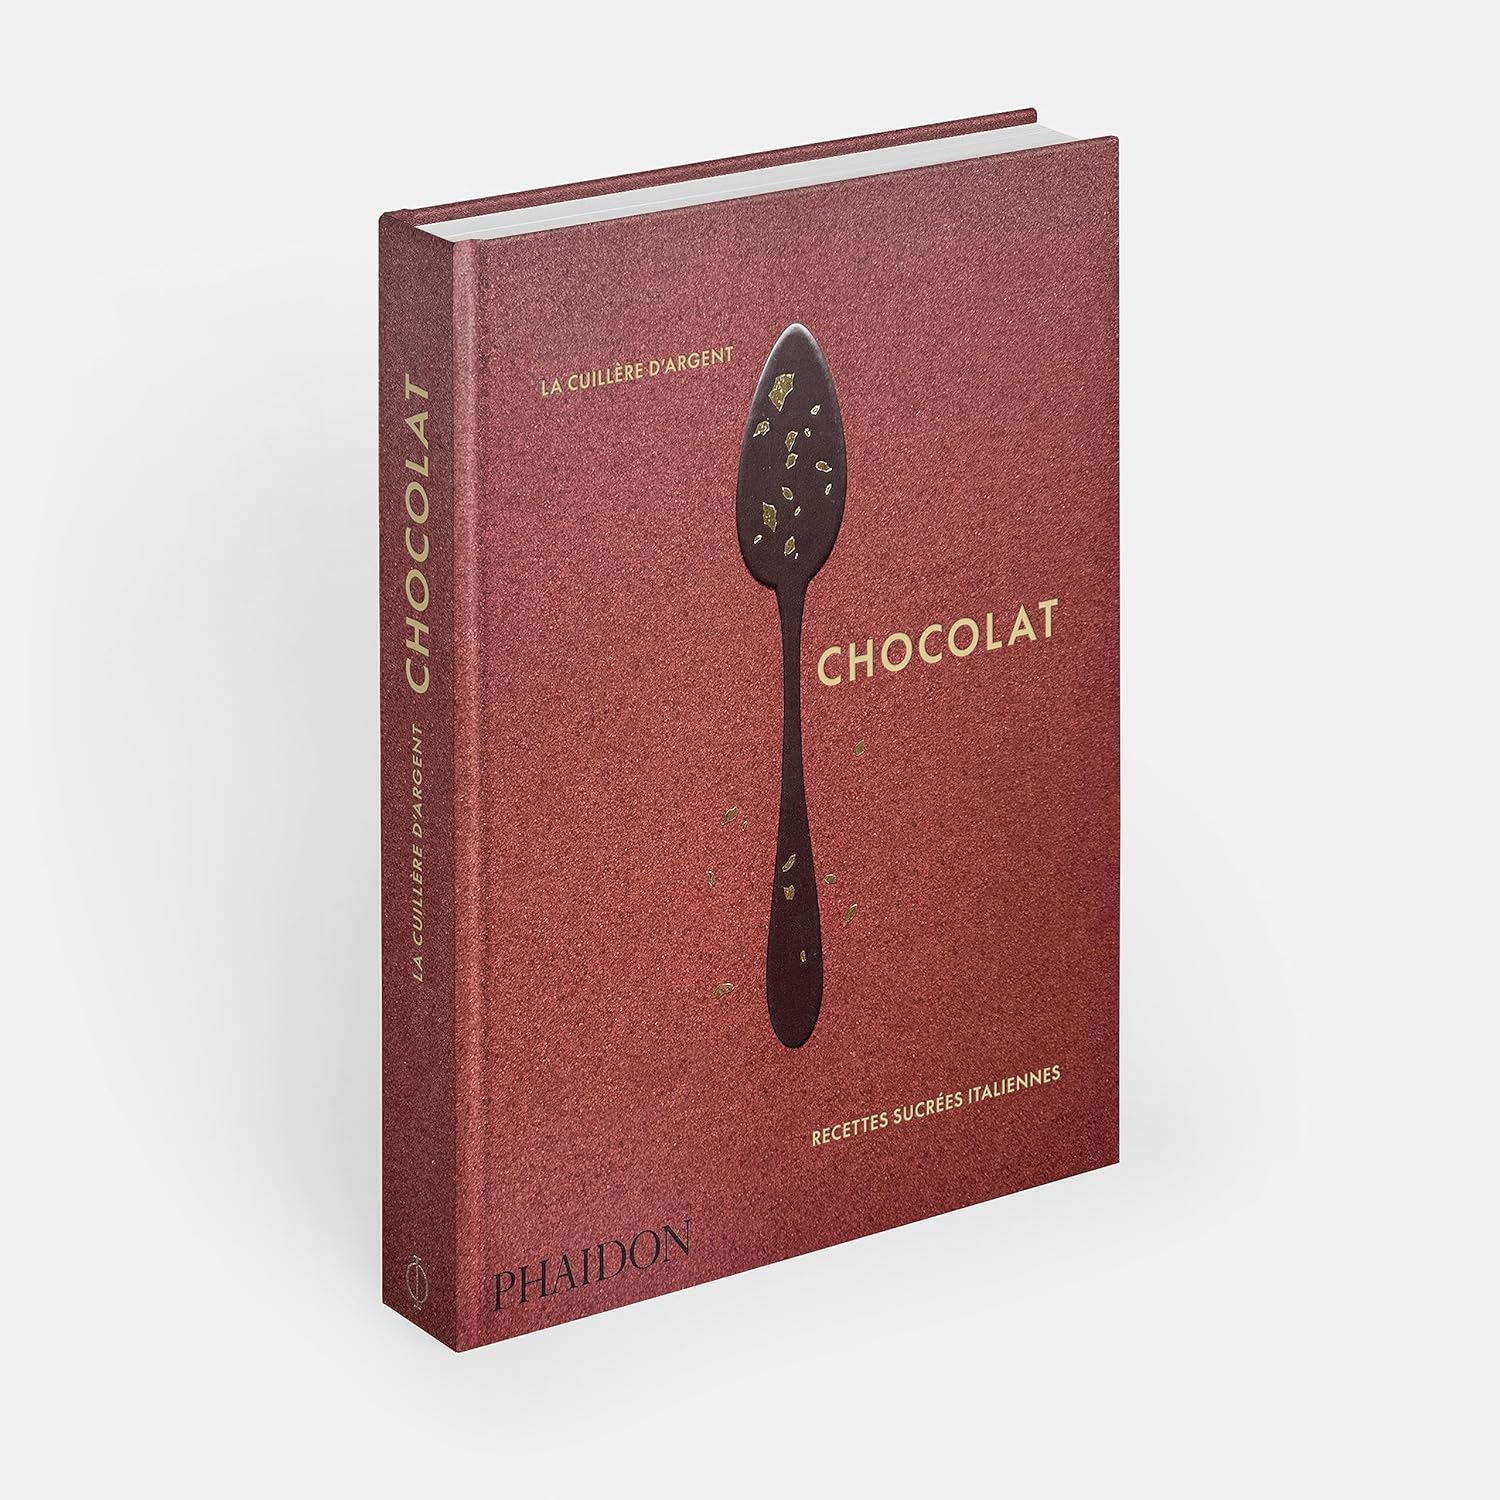 La cuillère d’argent : chocolat    - Phaïdon - Livre de cuisine - 